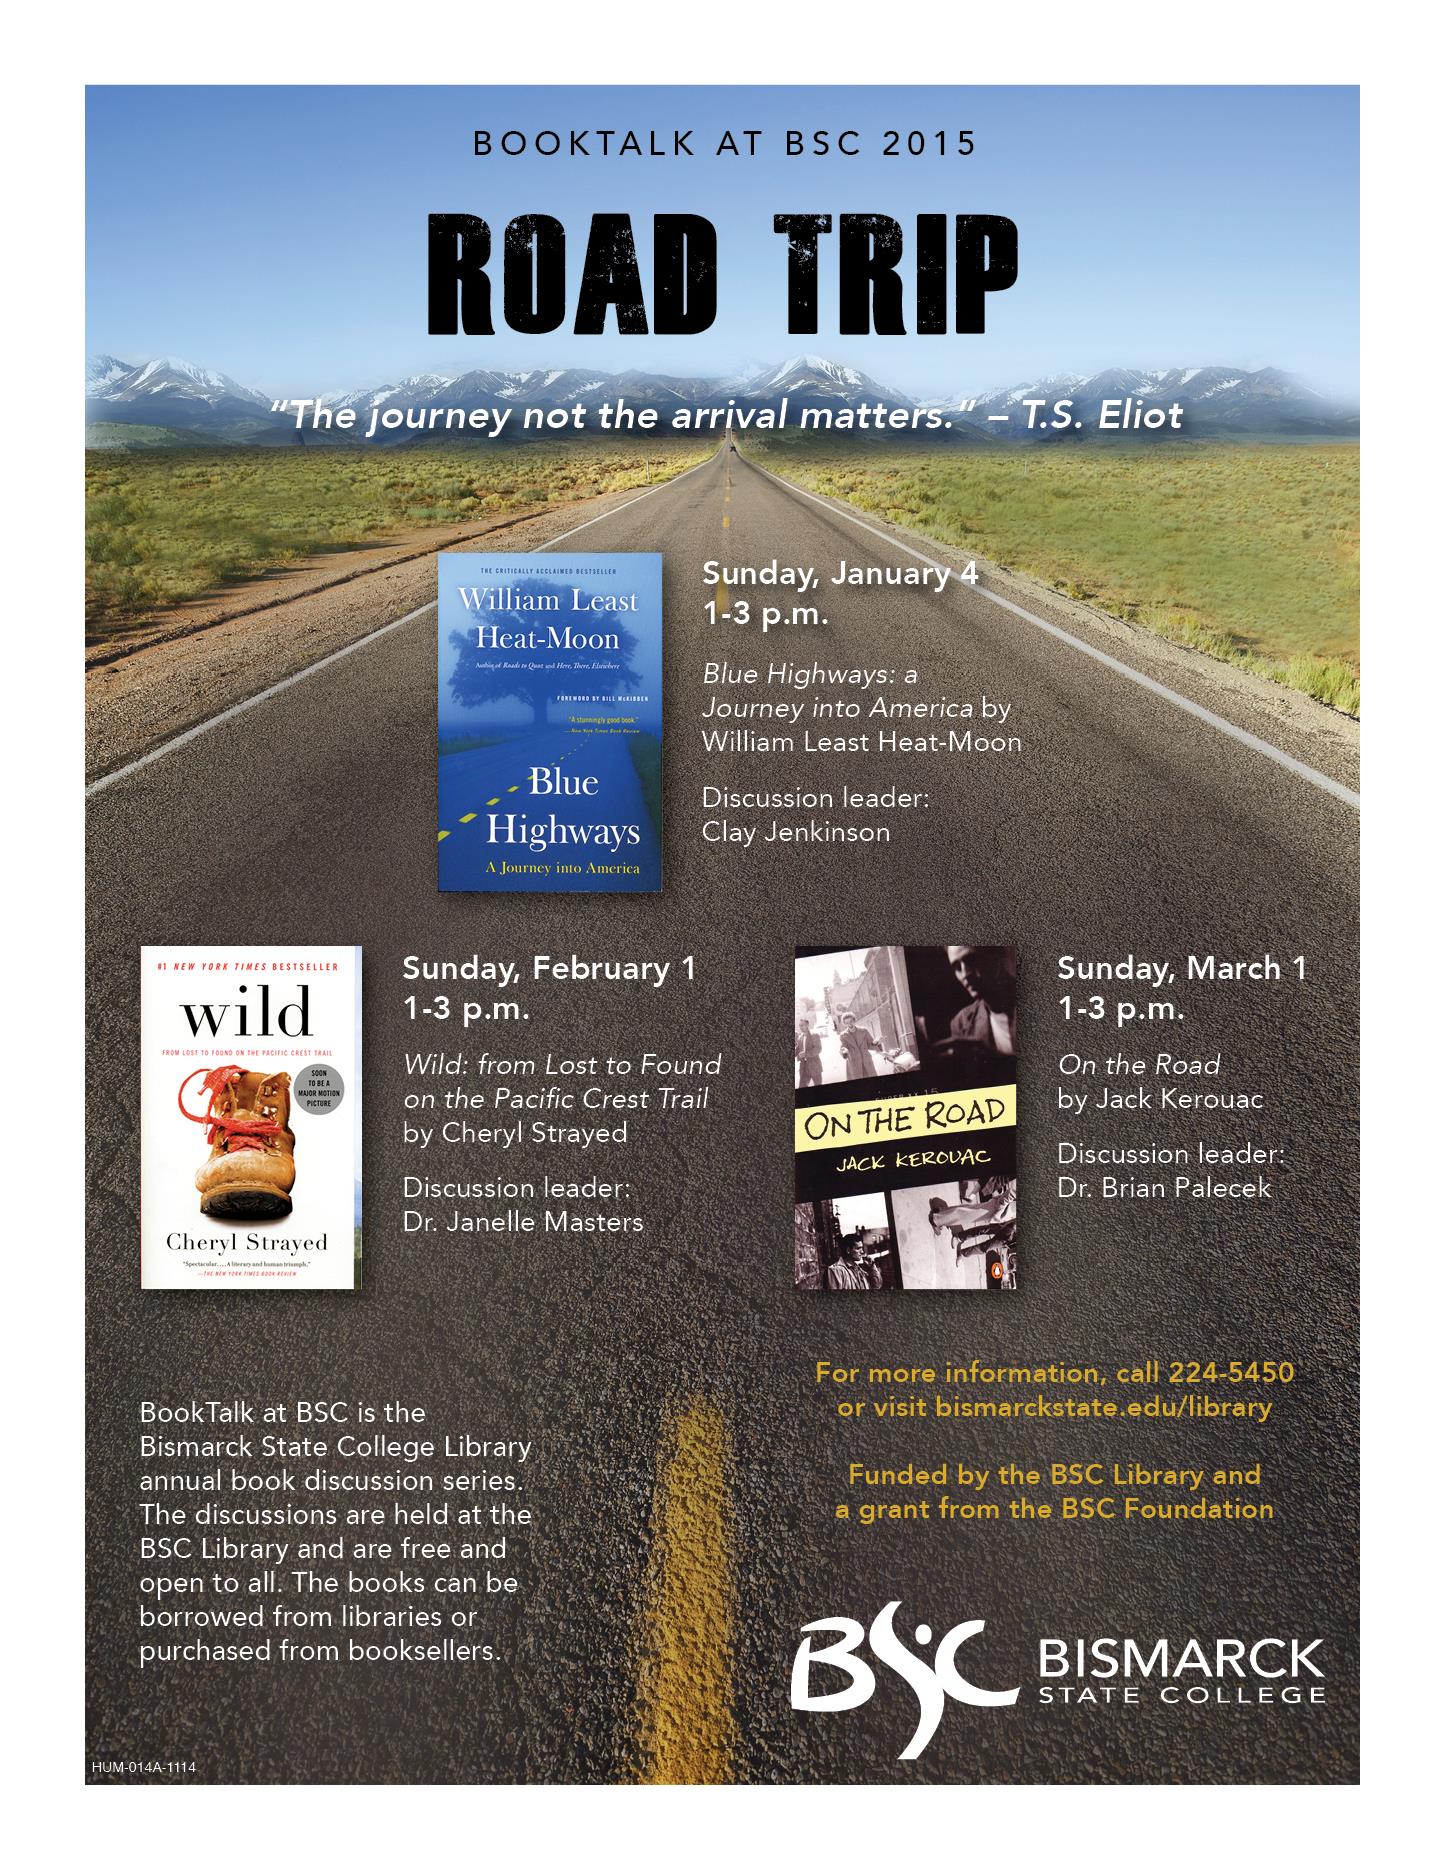 BSC BookTalk 2015 Road Trip